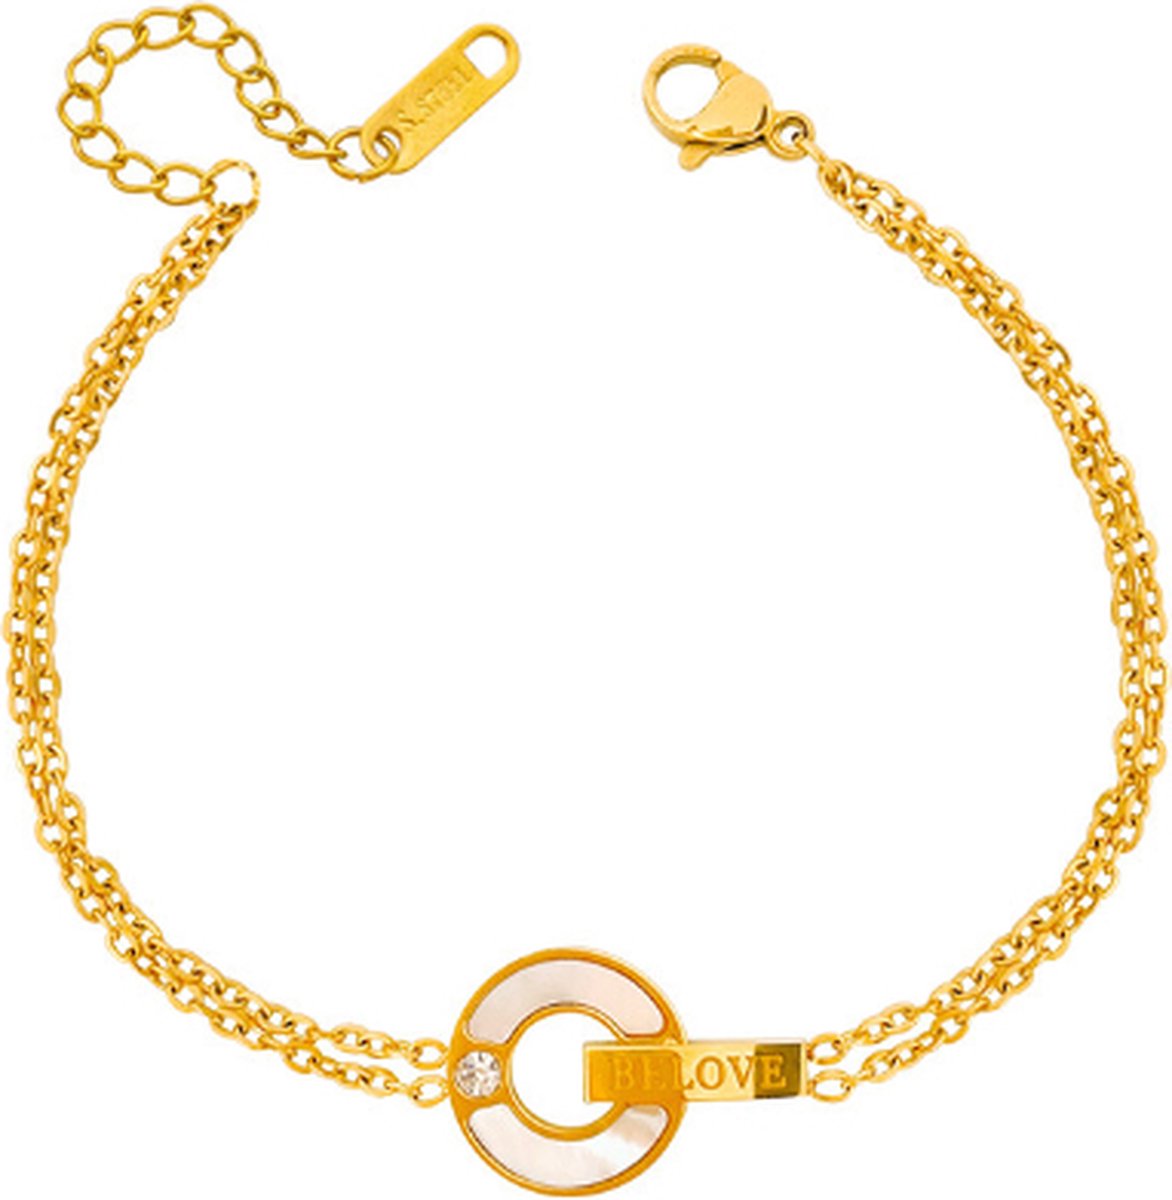 Armband goud ZOË 18k goud verguld met parelmoer en zirkonia kristal - Goudkleurige armbanden van Sophie Siero - Inclusief cadeauverpakking - Sieraad